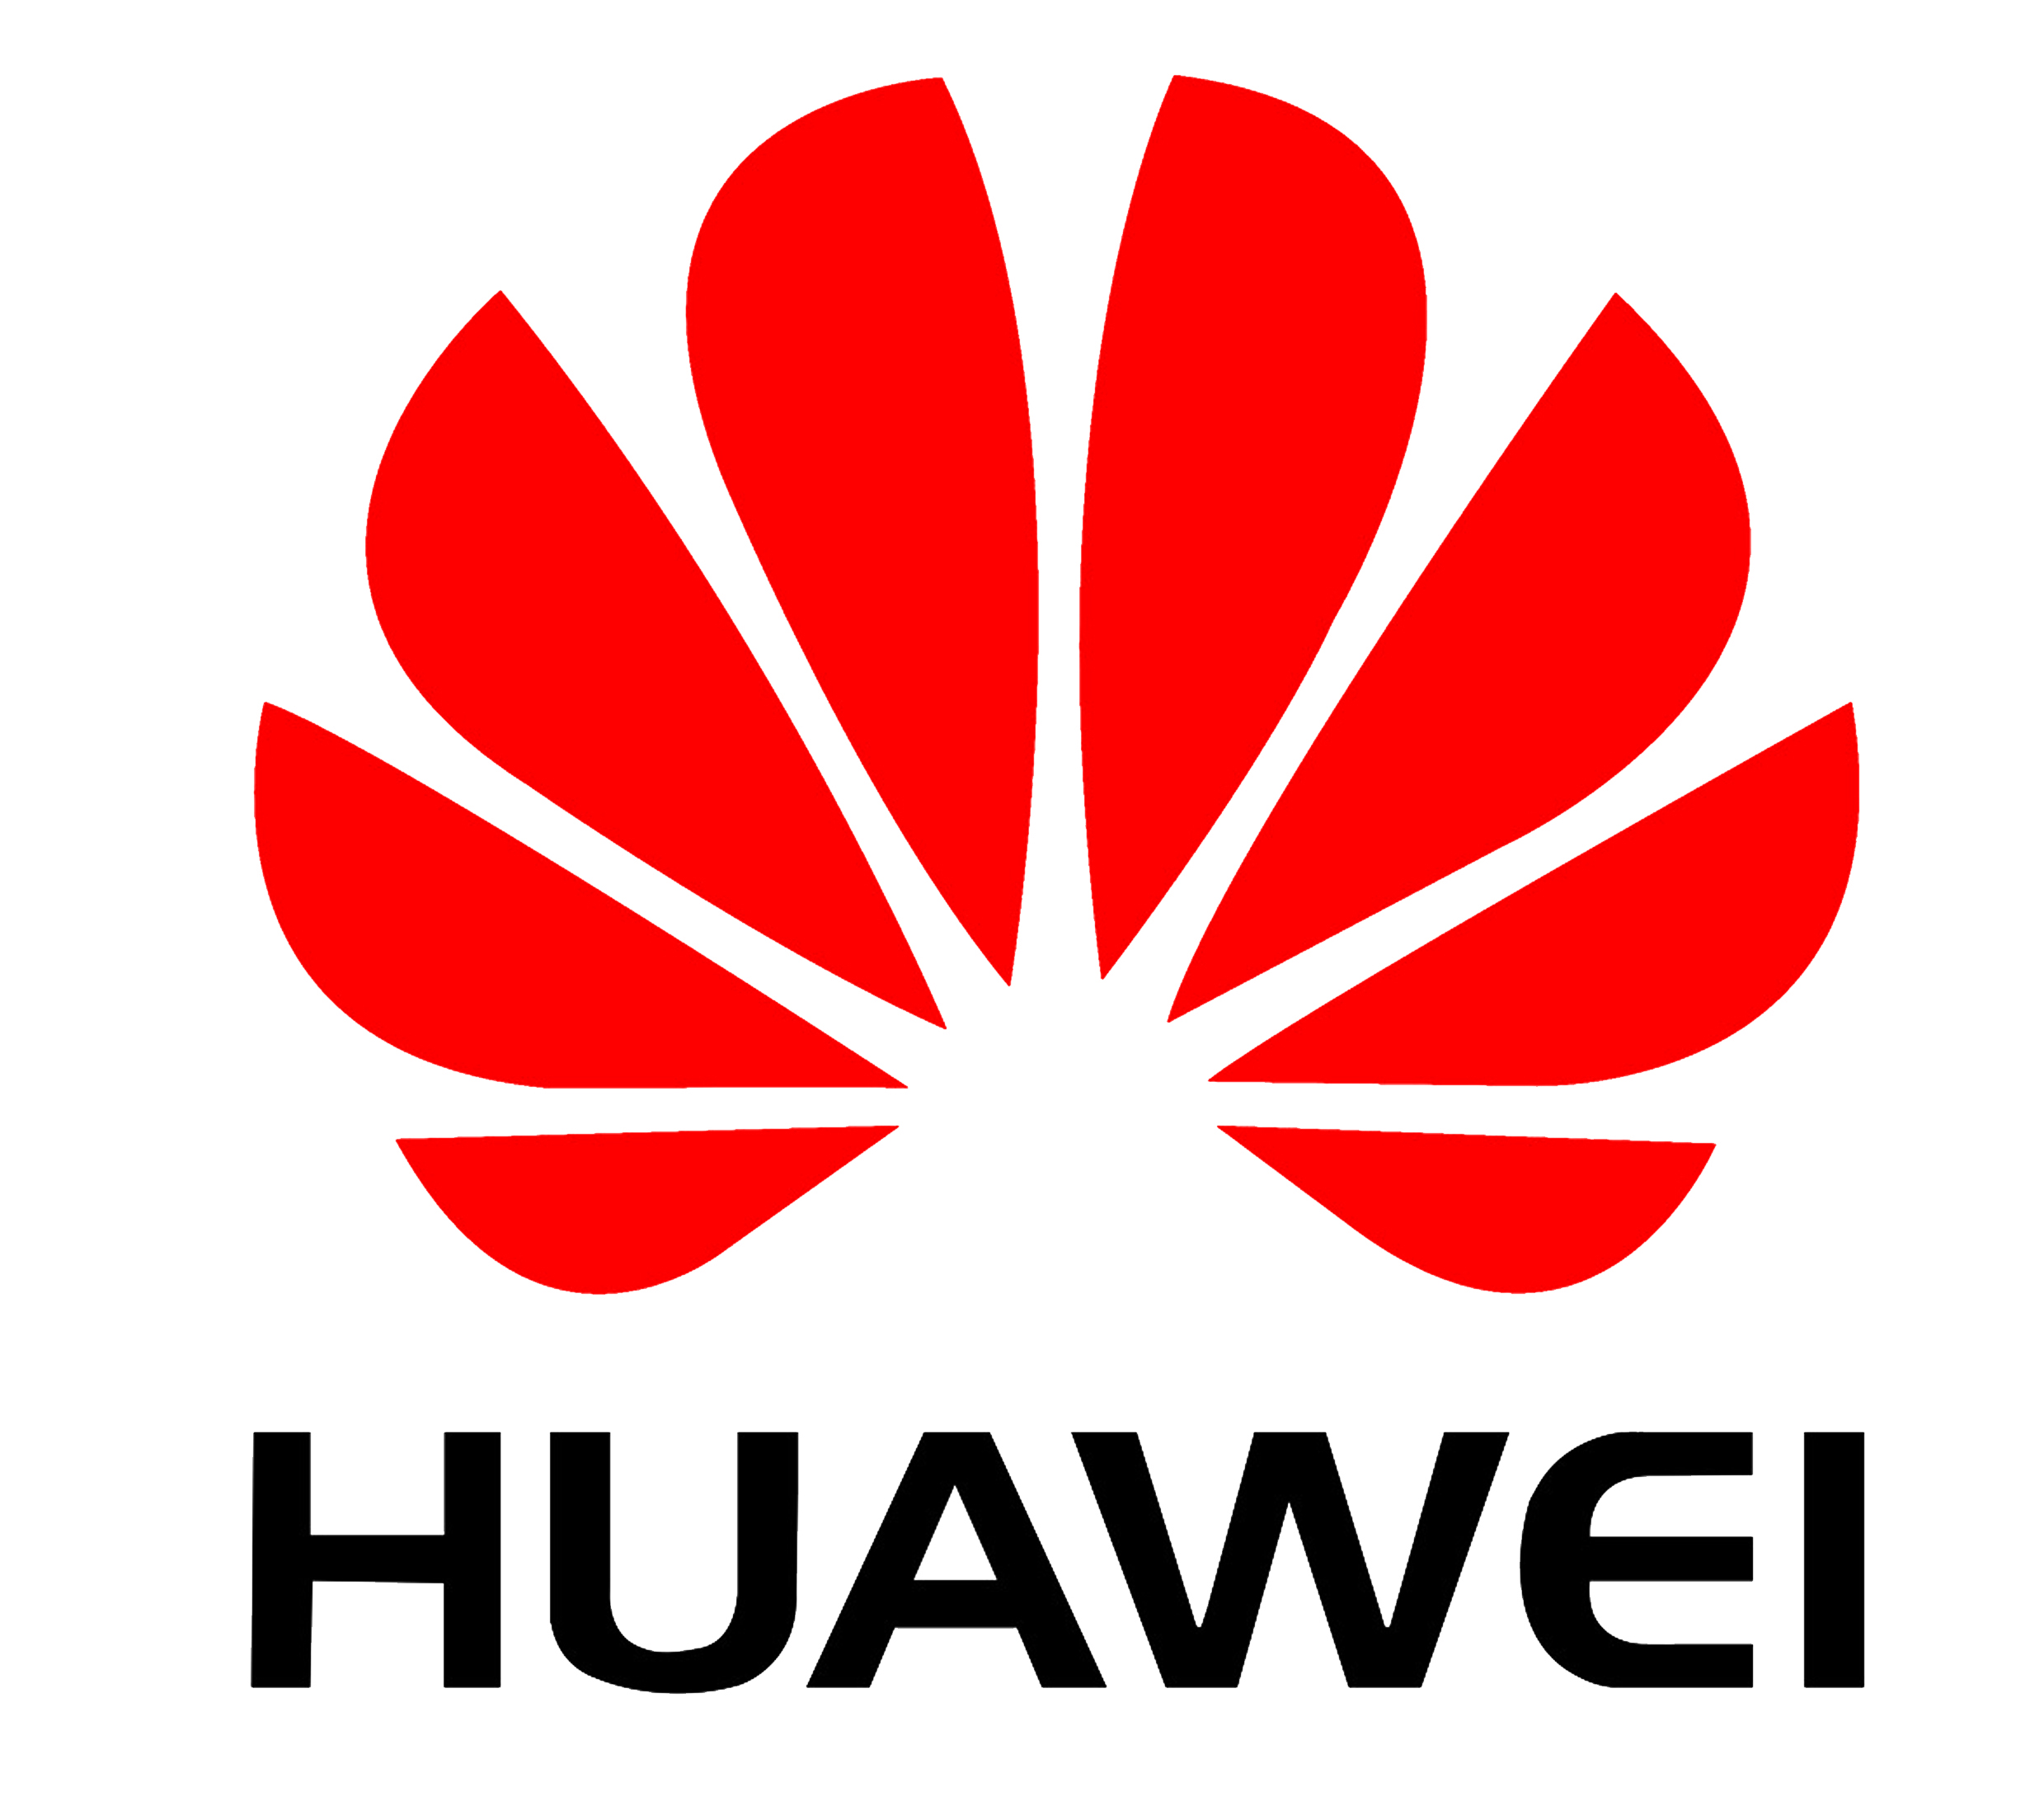 Huawei G7 Plus características y especificaciones, analisis, opiniones ...